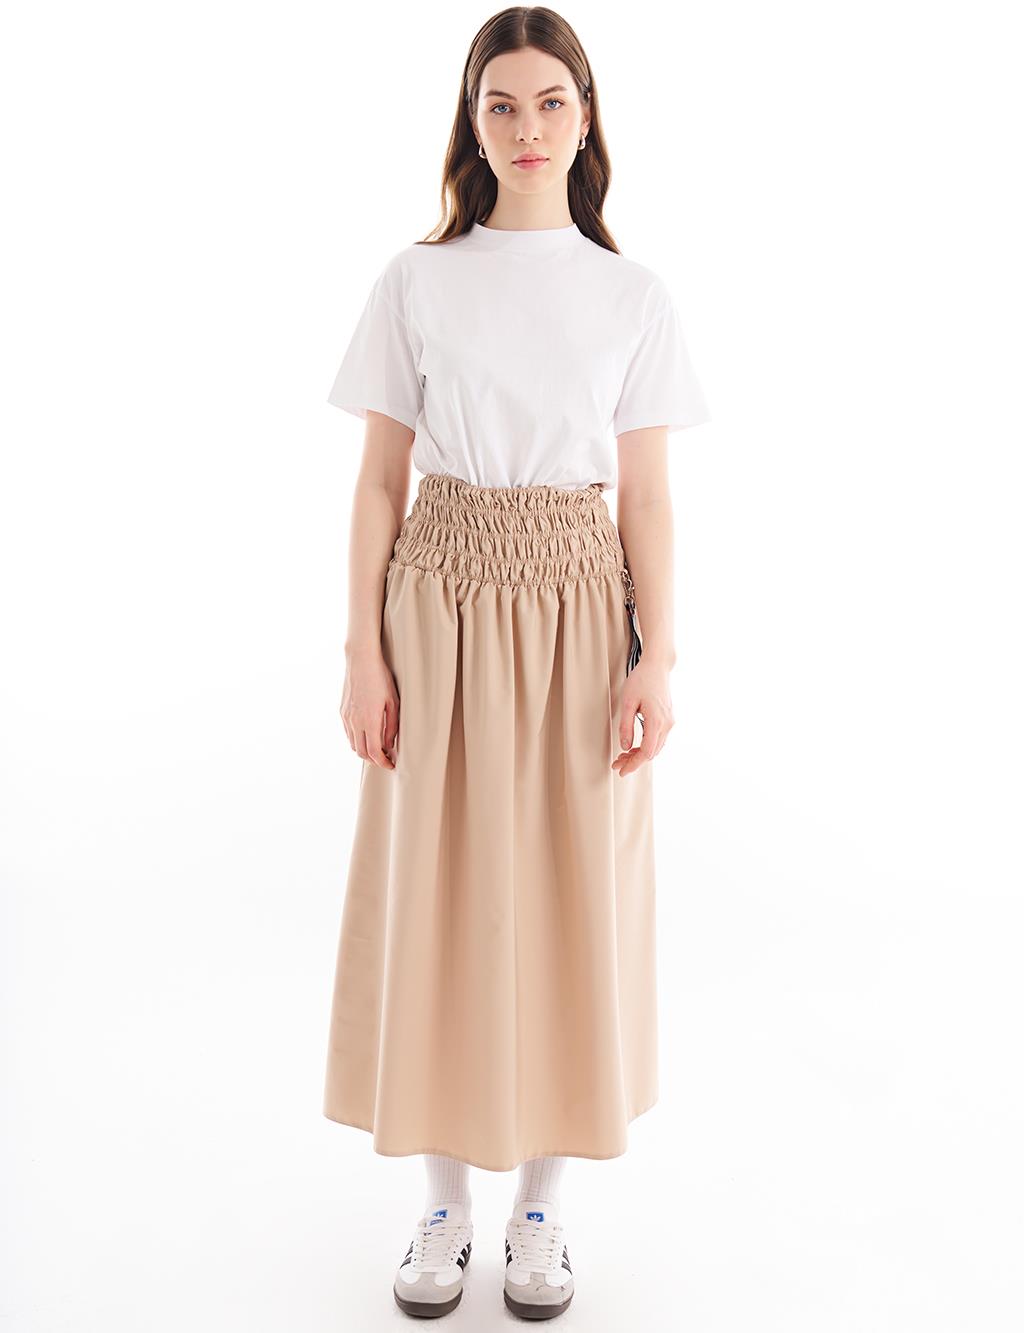 Аксессуар на эластичной талии Детализированная юбка бежевого цвета Kayra плиссированная юбка на пуговицах цвета бежевого песка kayra